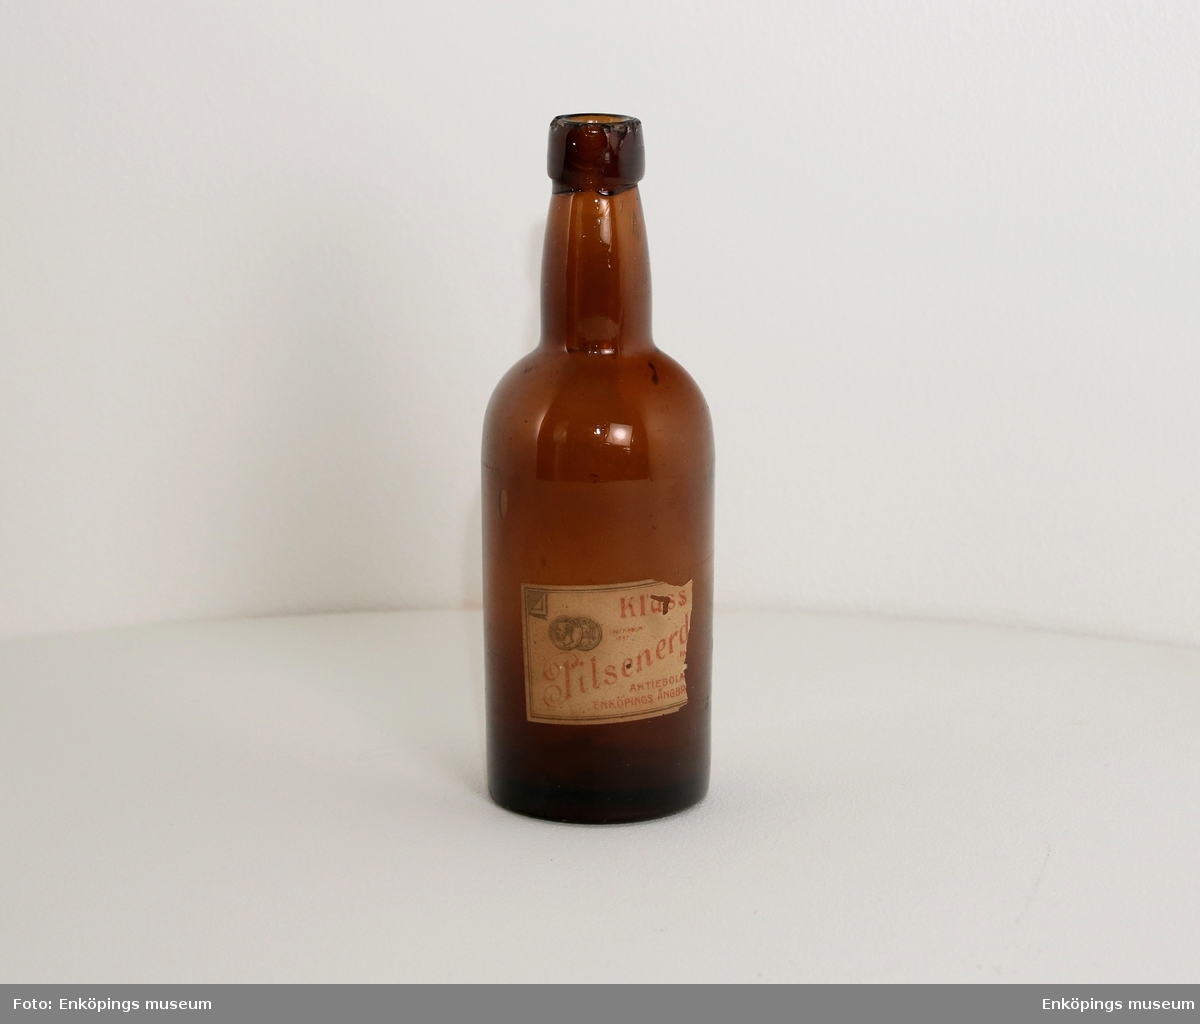 Brun flaska med etikett " Klass..., pilsnerd..., Aktiebola..., Enköpings Ångbr.... Märkt ibotten med " ÅRNAC"?.